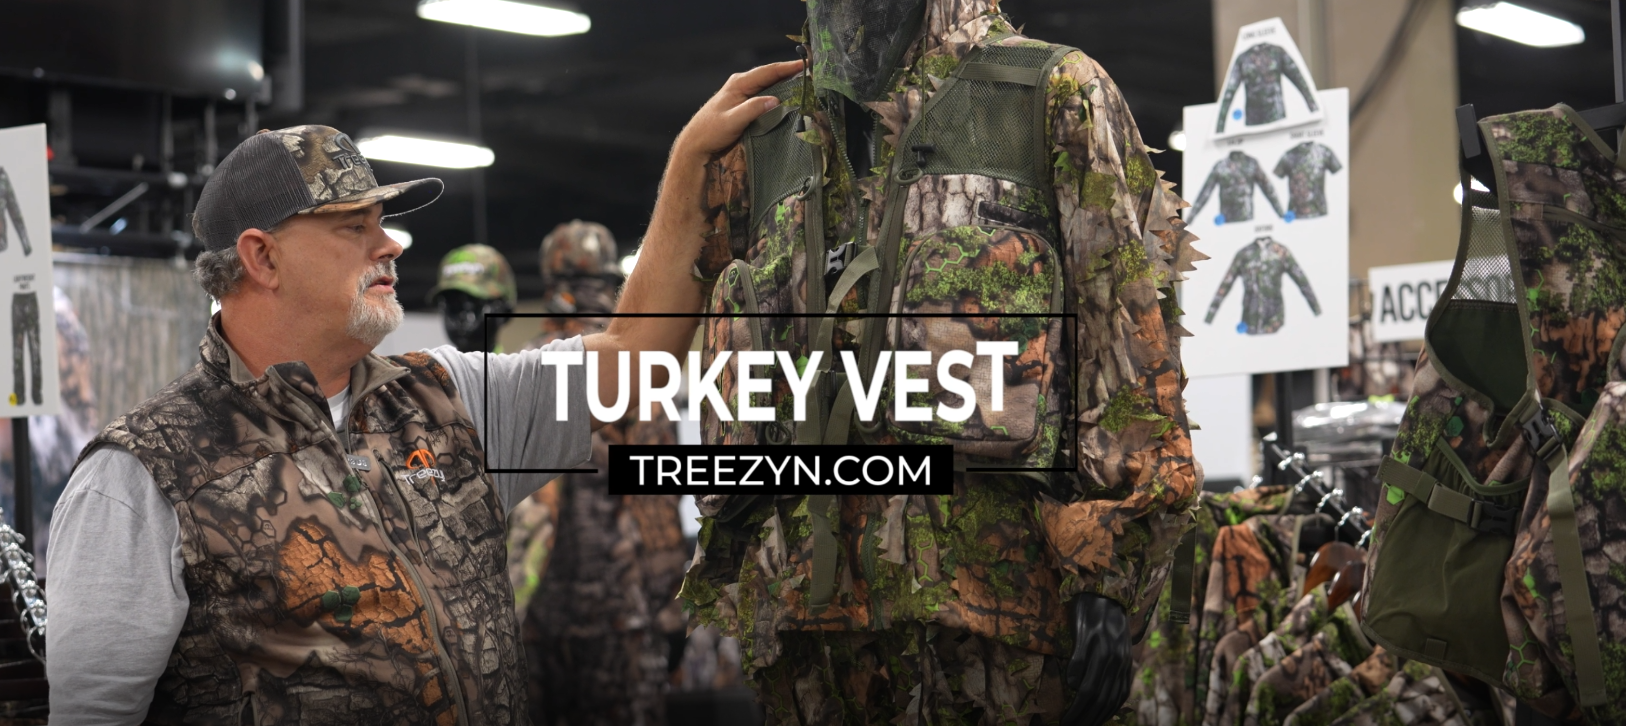 Load video: NWTF - Treezyn Turkey Vest